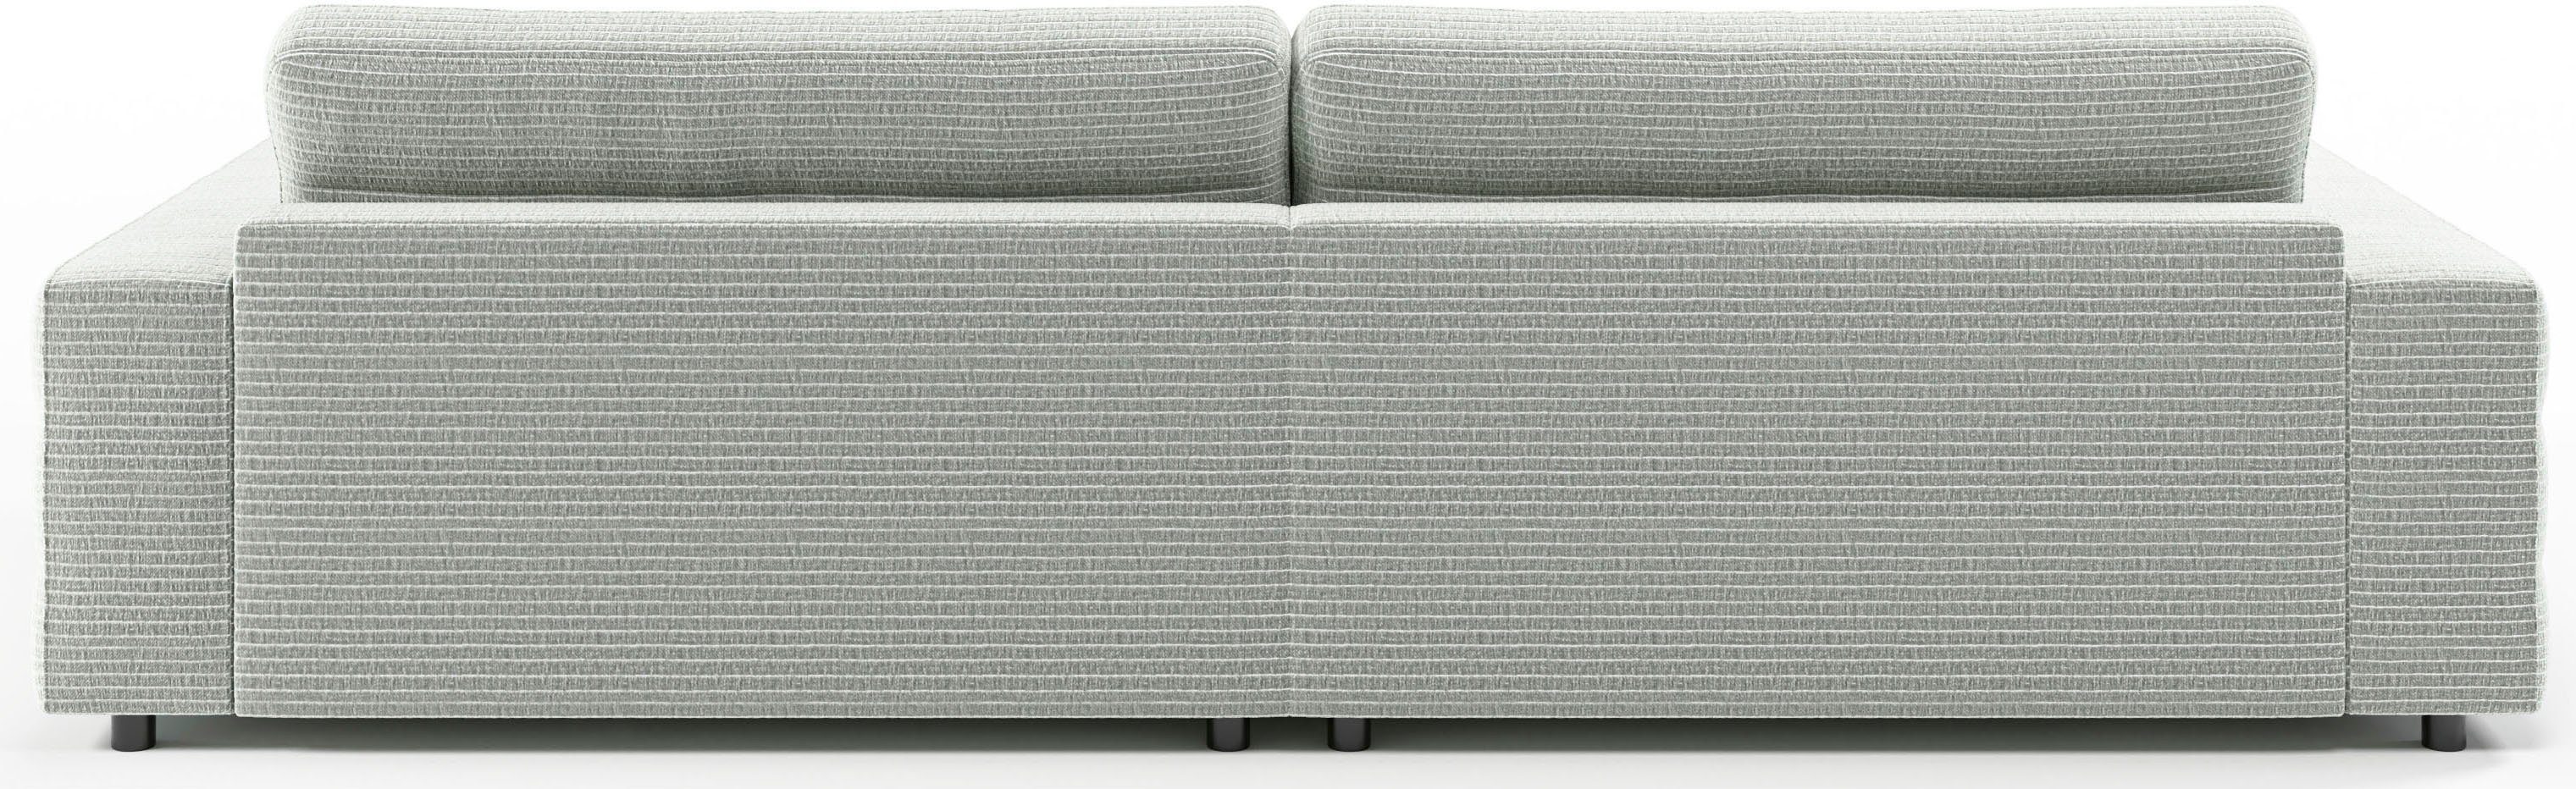 3C Candy Big-Sofa mit Quersteppung Stripes, grau feiner Lose Rückenkissen